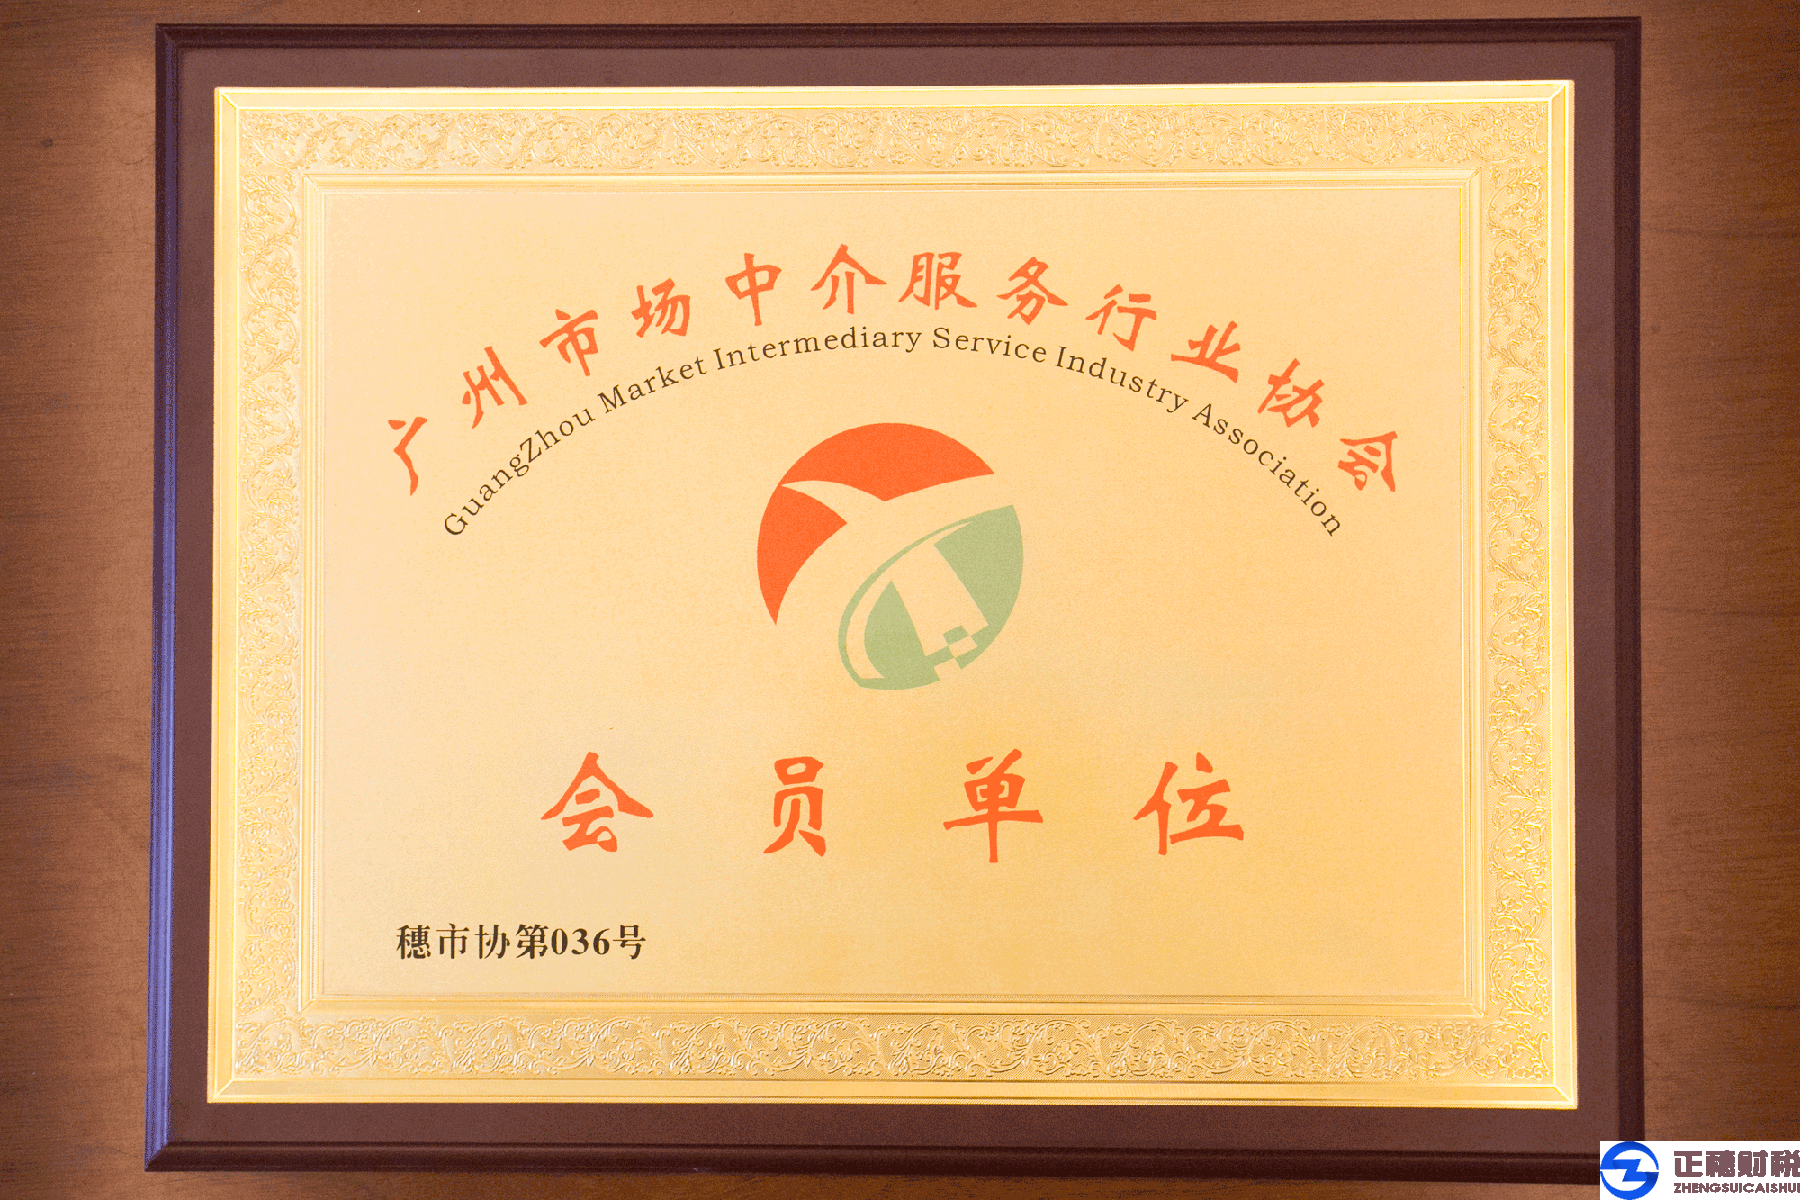 广州市场中介服务行业中介会员单位